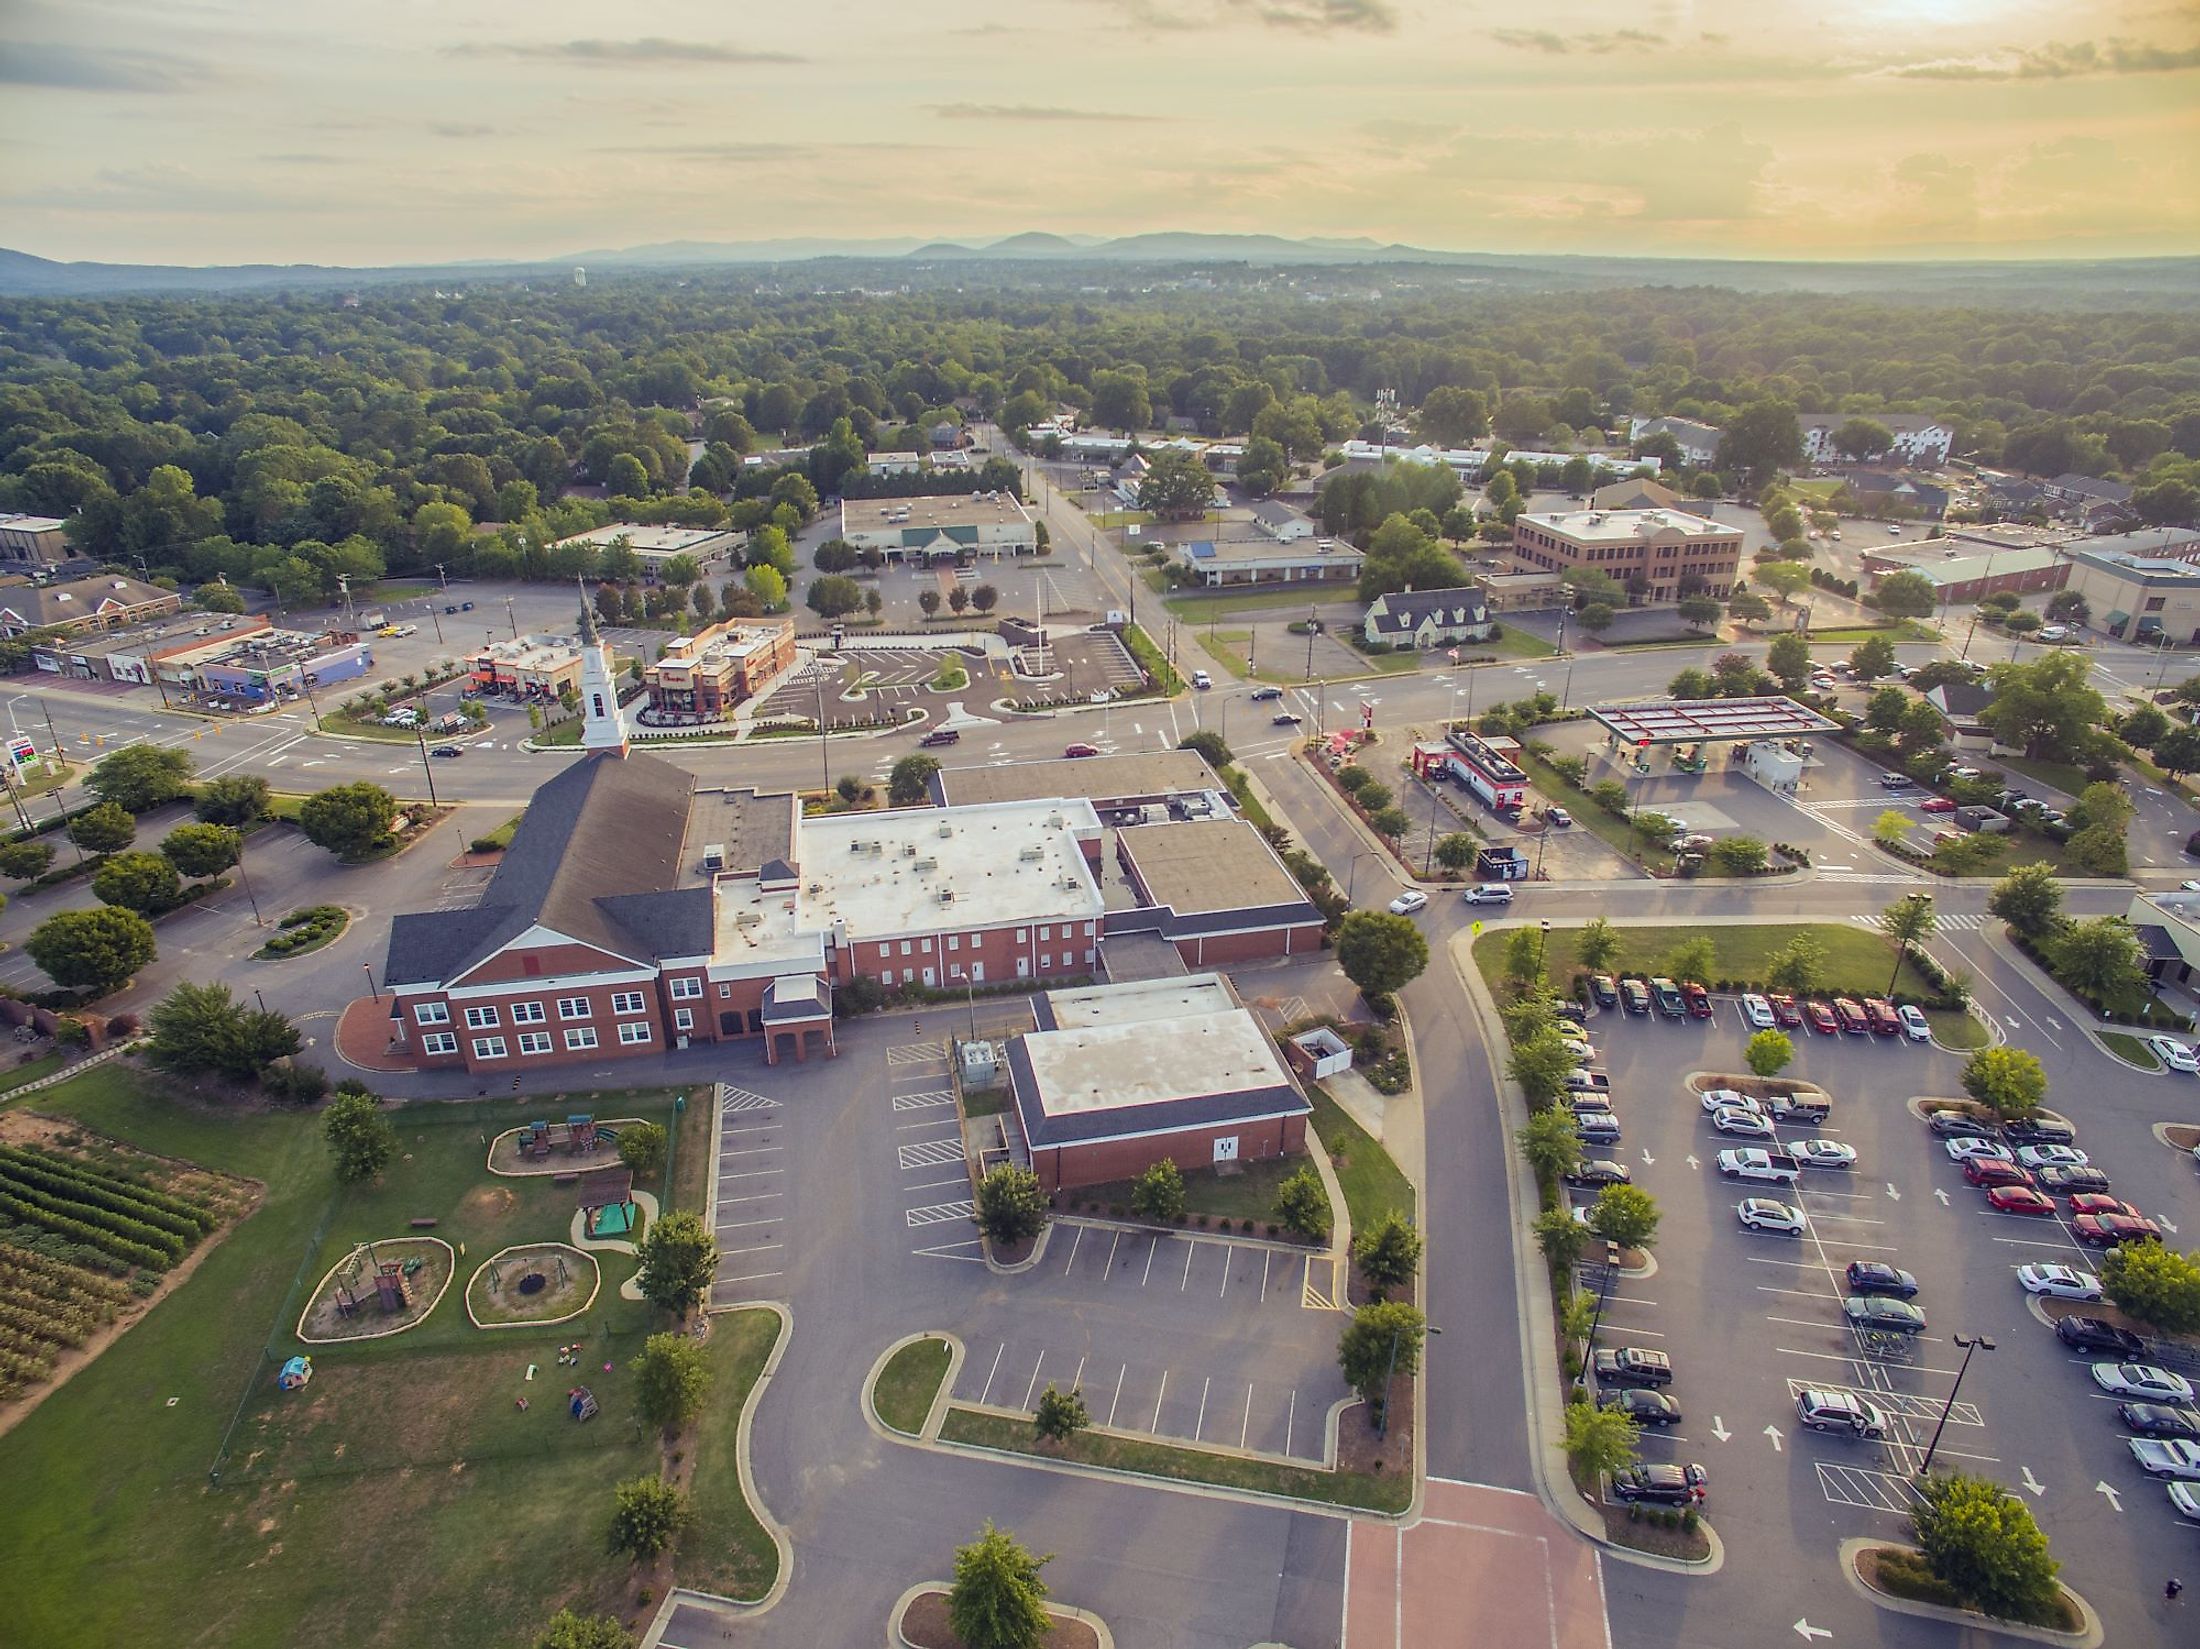 Aerial view of Hickory, North Carolina